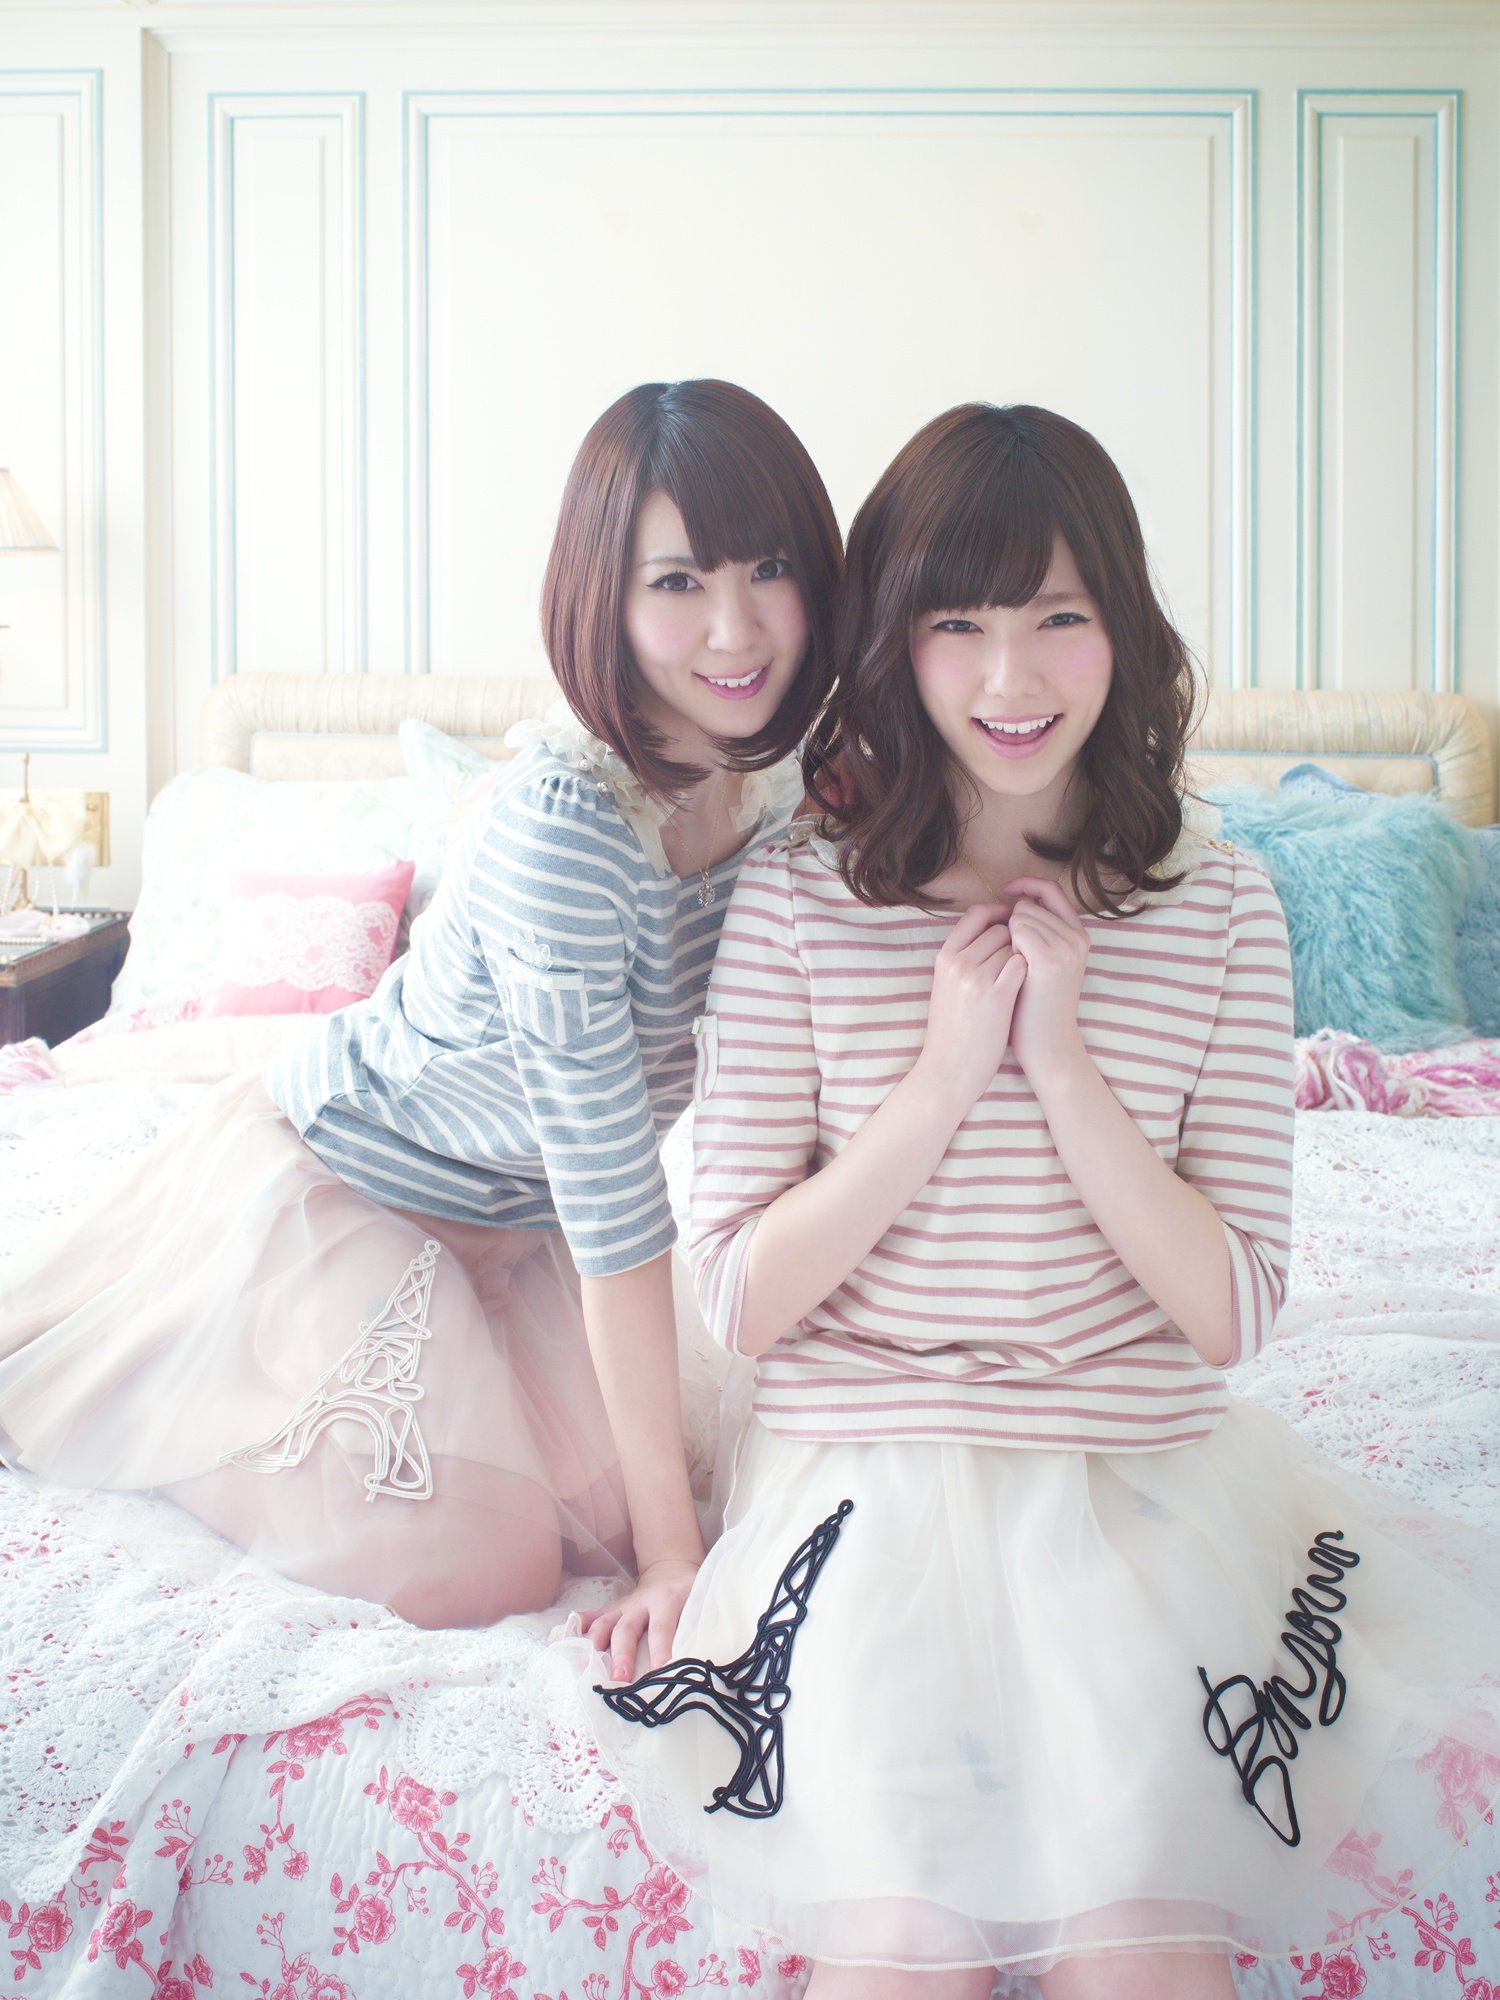 AKB48’s Shimazaki Haruka & Kikuchi Ayaka become cute fashionista in TVCM!